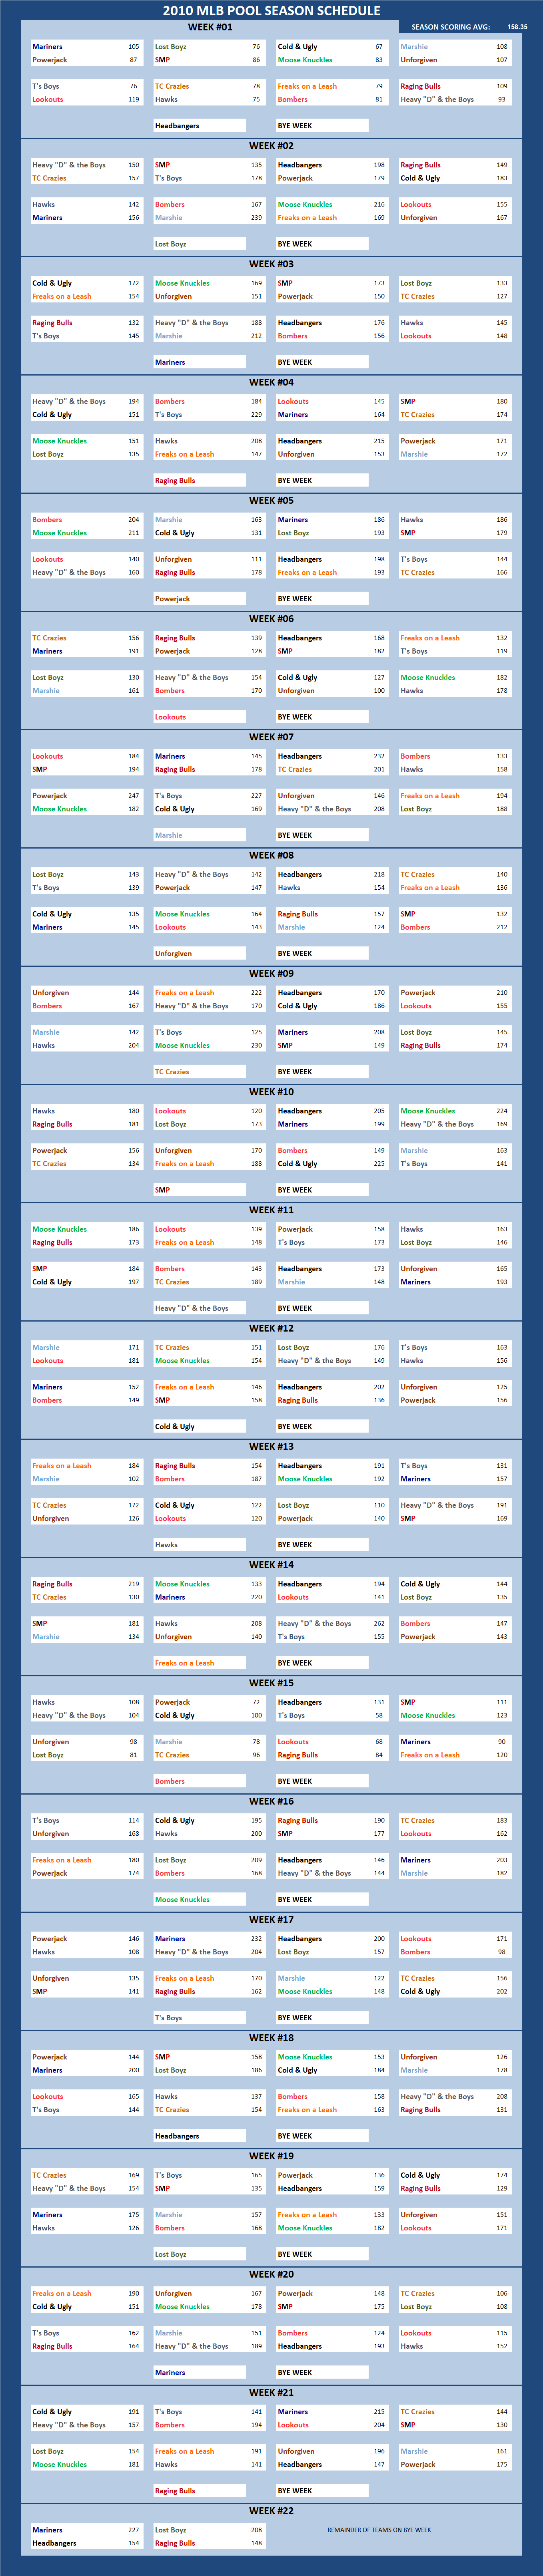 2010 Major League Baseball Pool Season Schedule